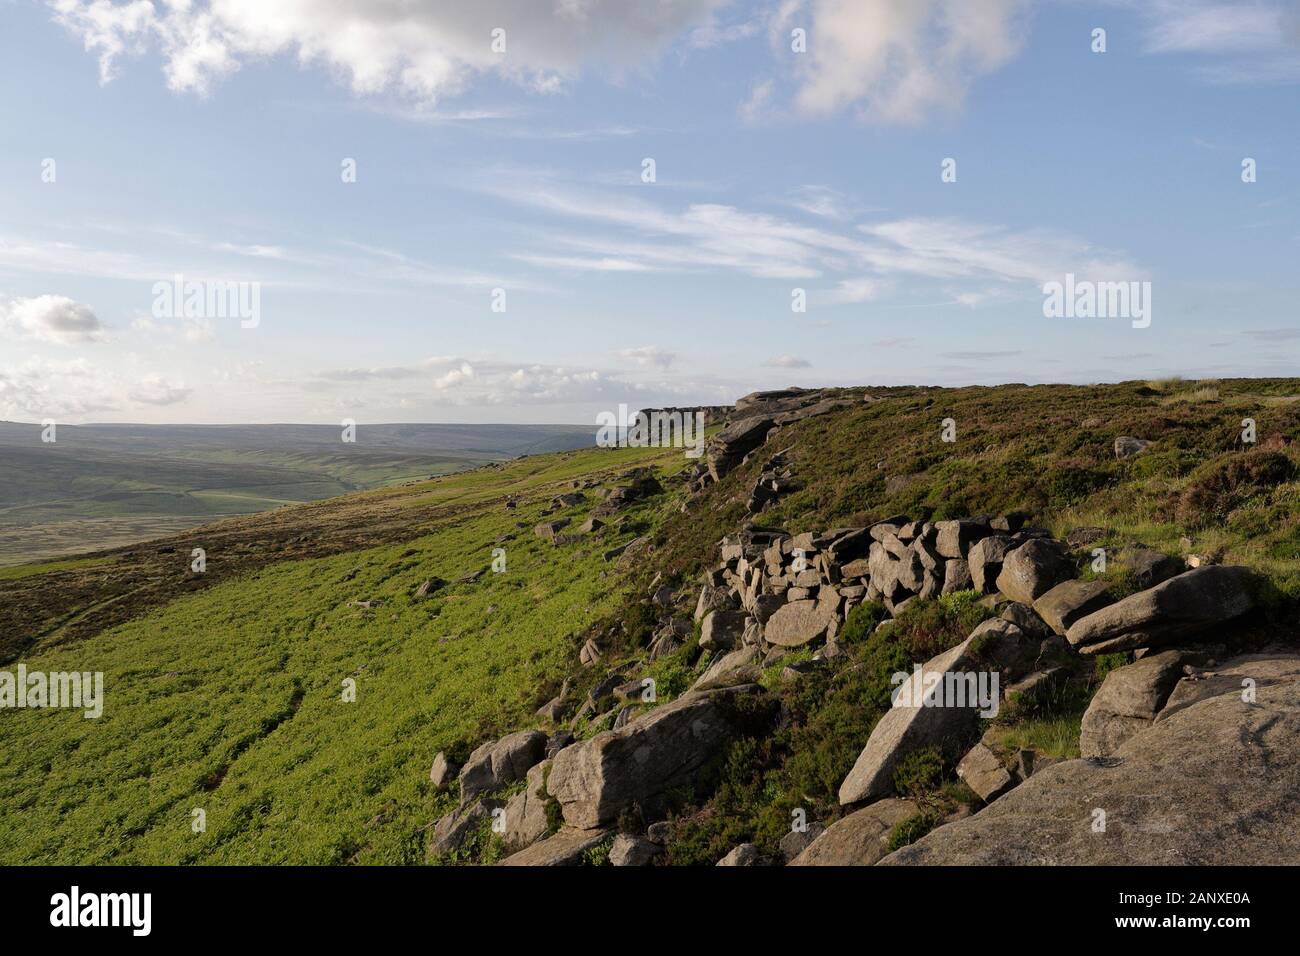 Stanage Edge à High Neb dans le Derbyshire Peak District, parc national, Angleterre Royaume-Uni, Moorland Landscape Pennine Hills Banque D'Images